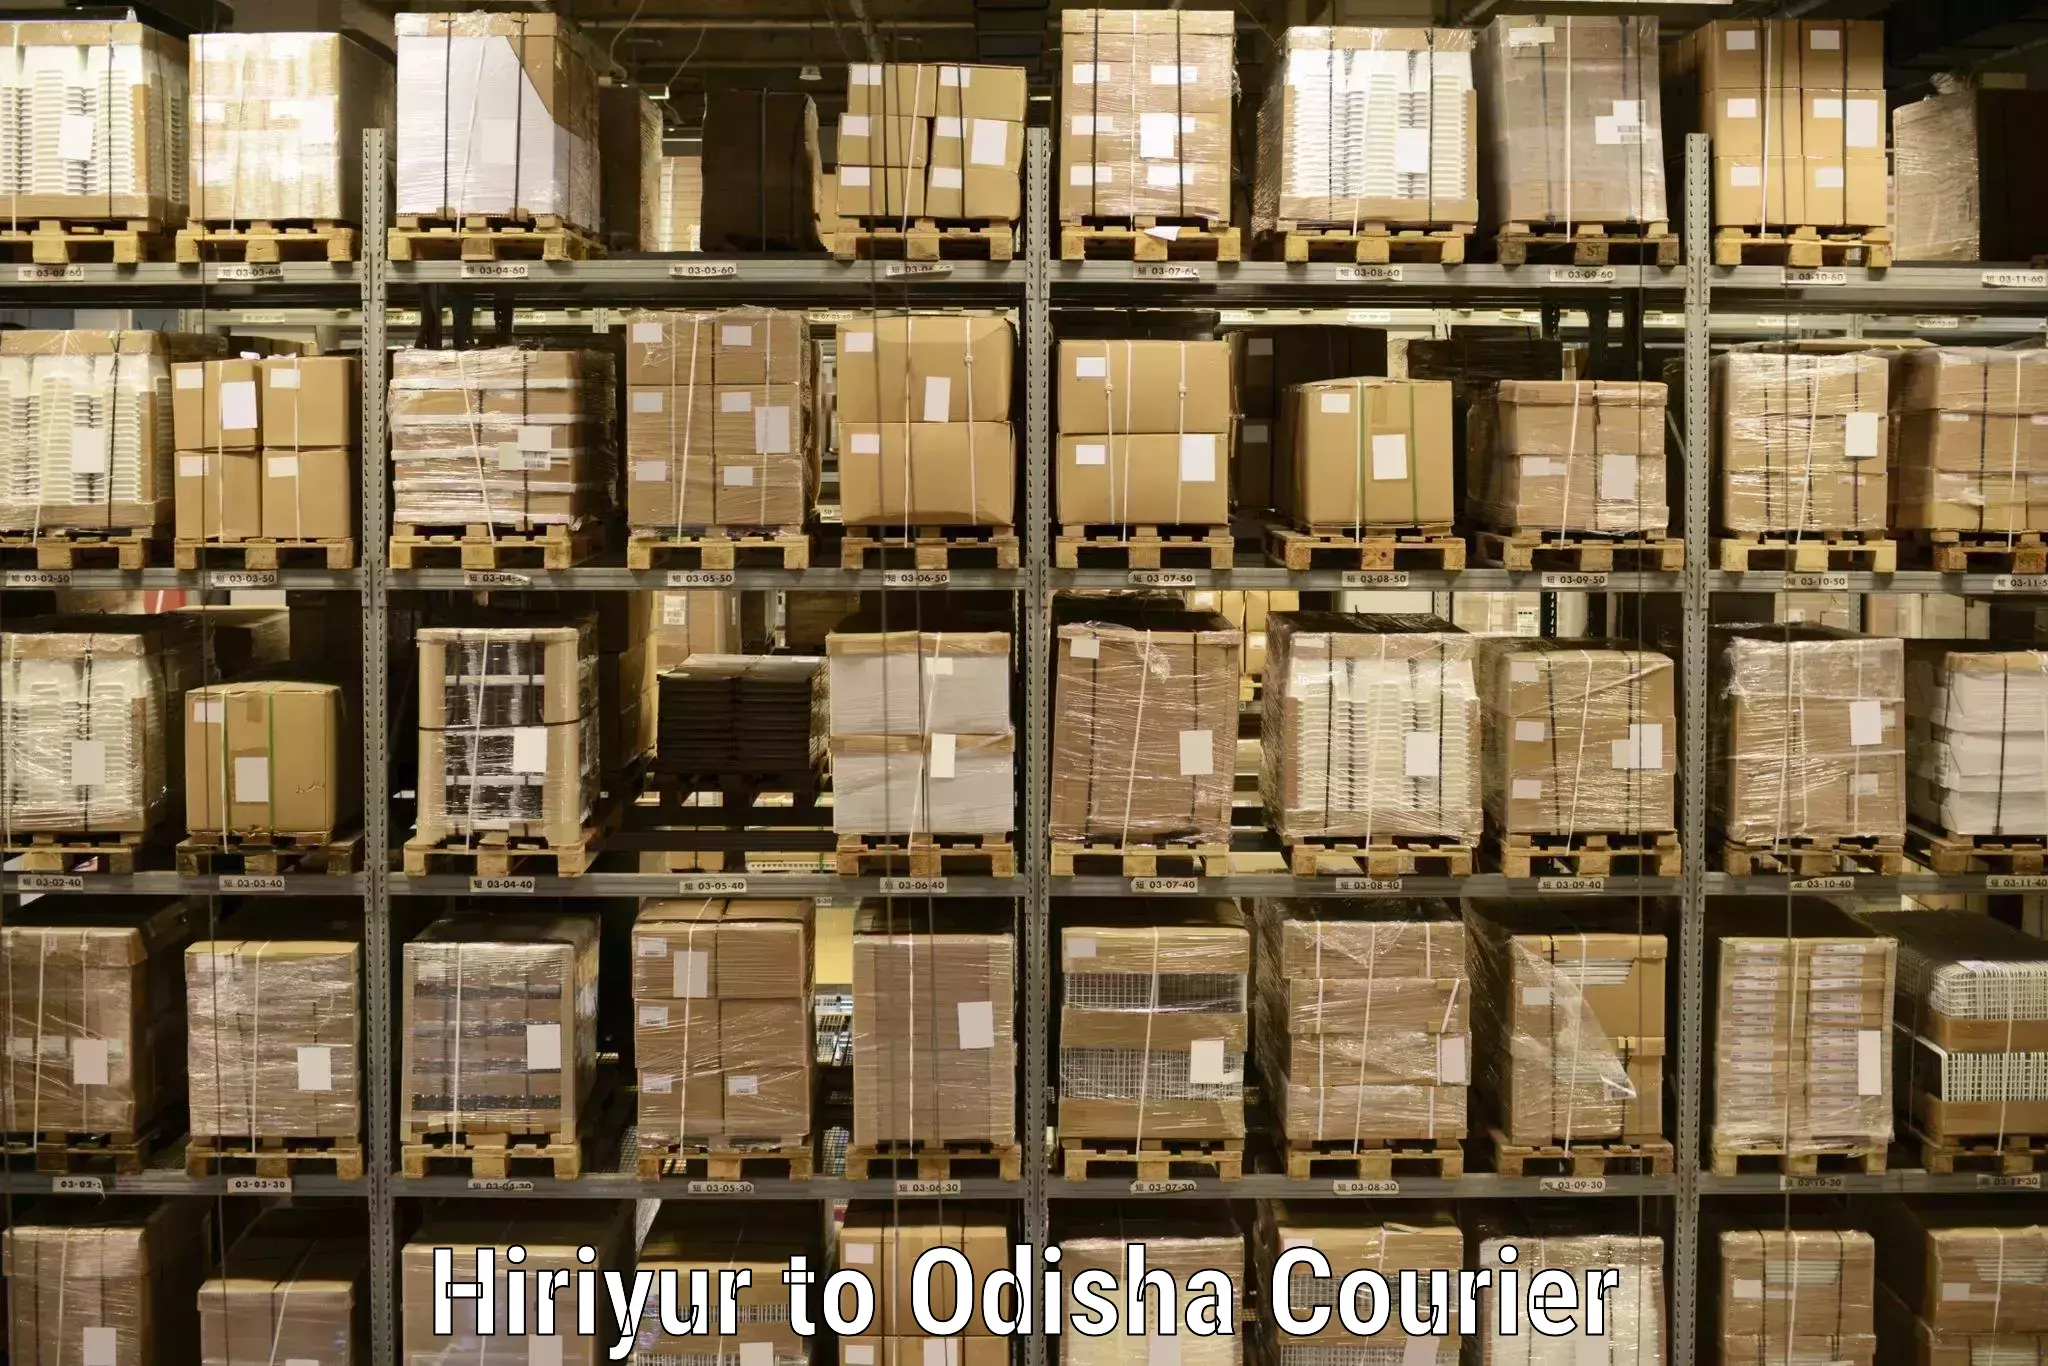 Efficient parcel service Hiriyur to Boudh